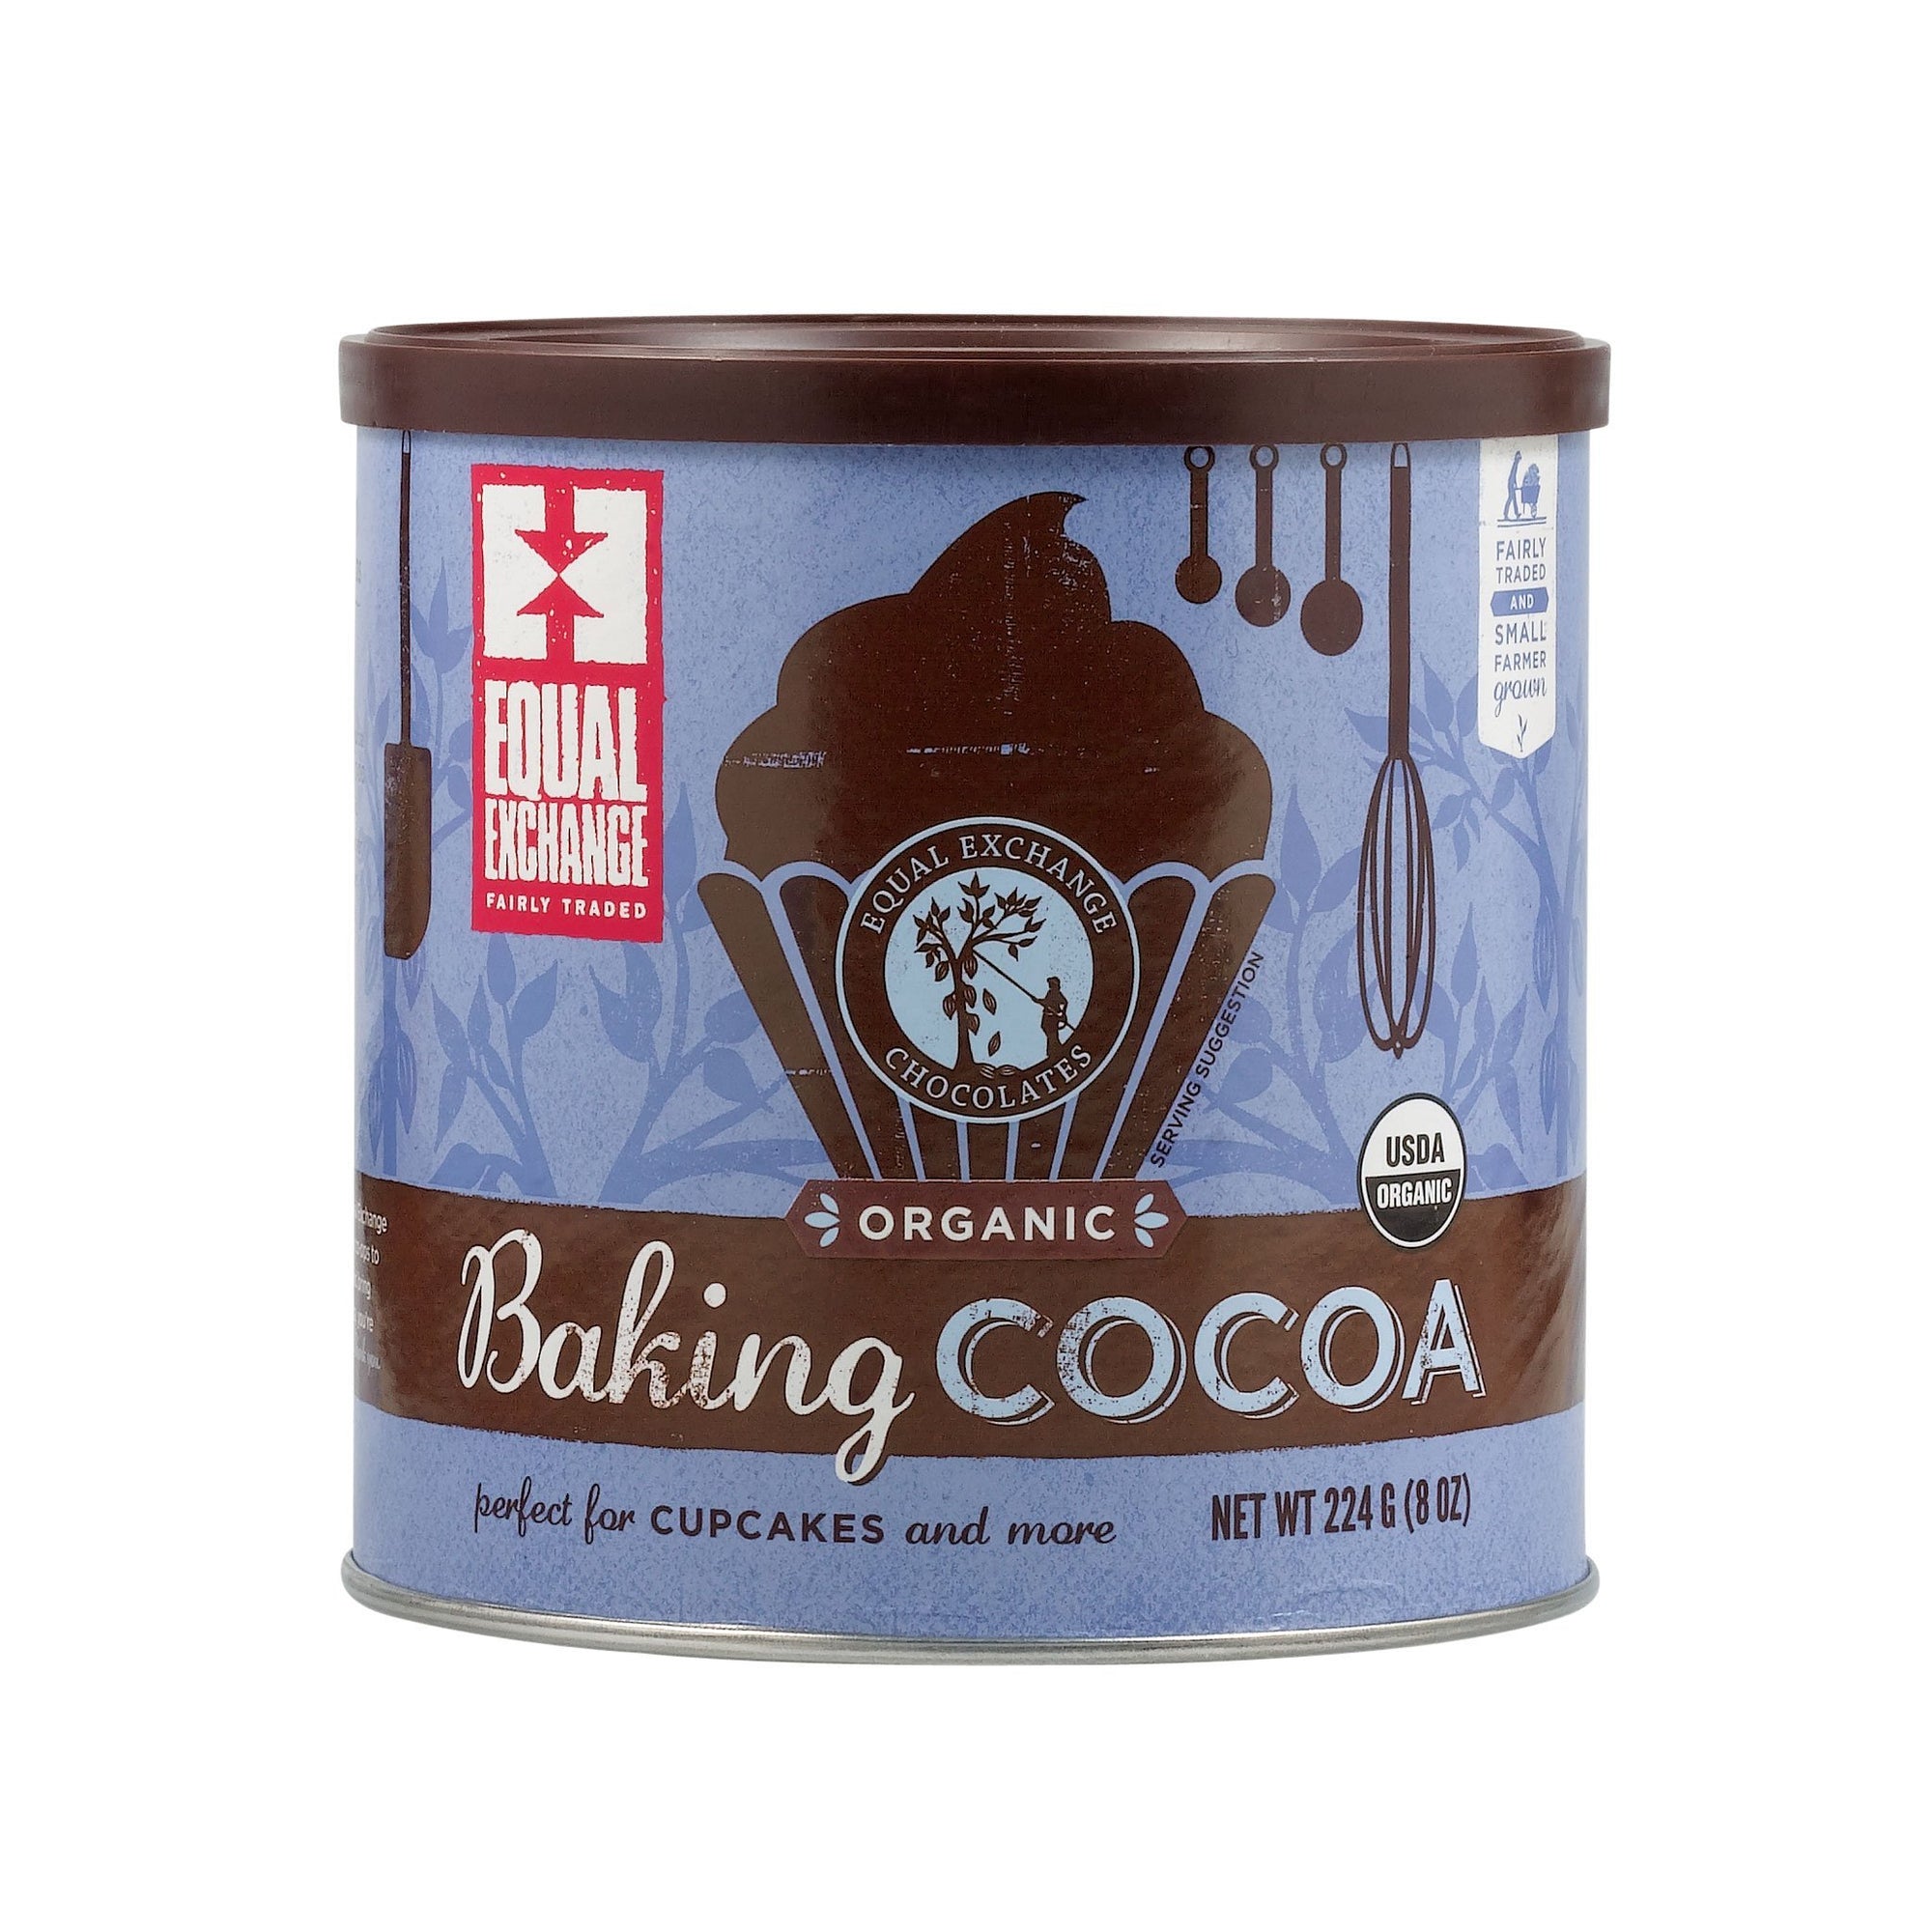 Organic Baking Cocoa - Equal Exchange - 8 oz